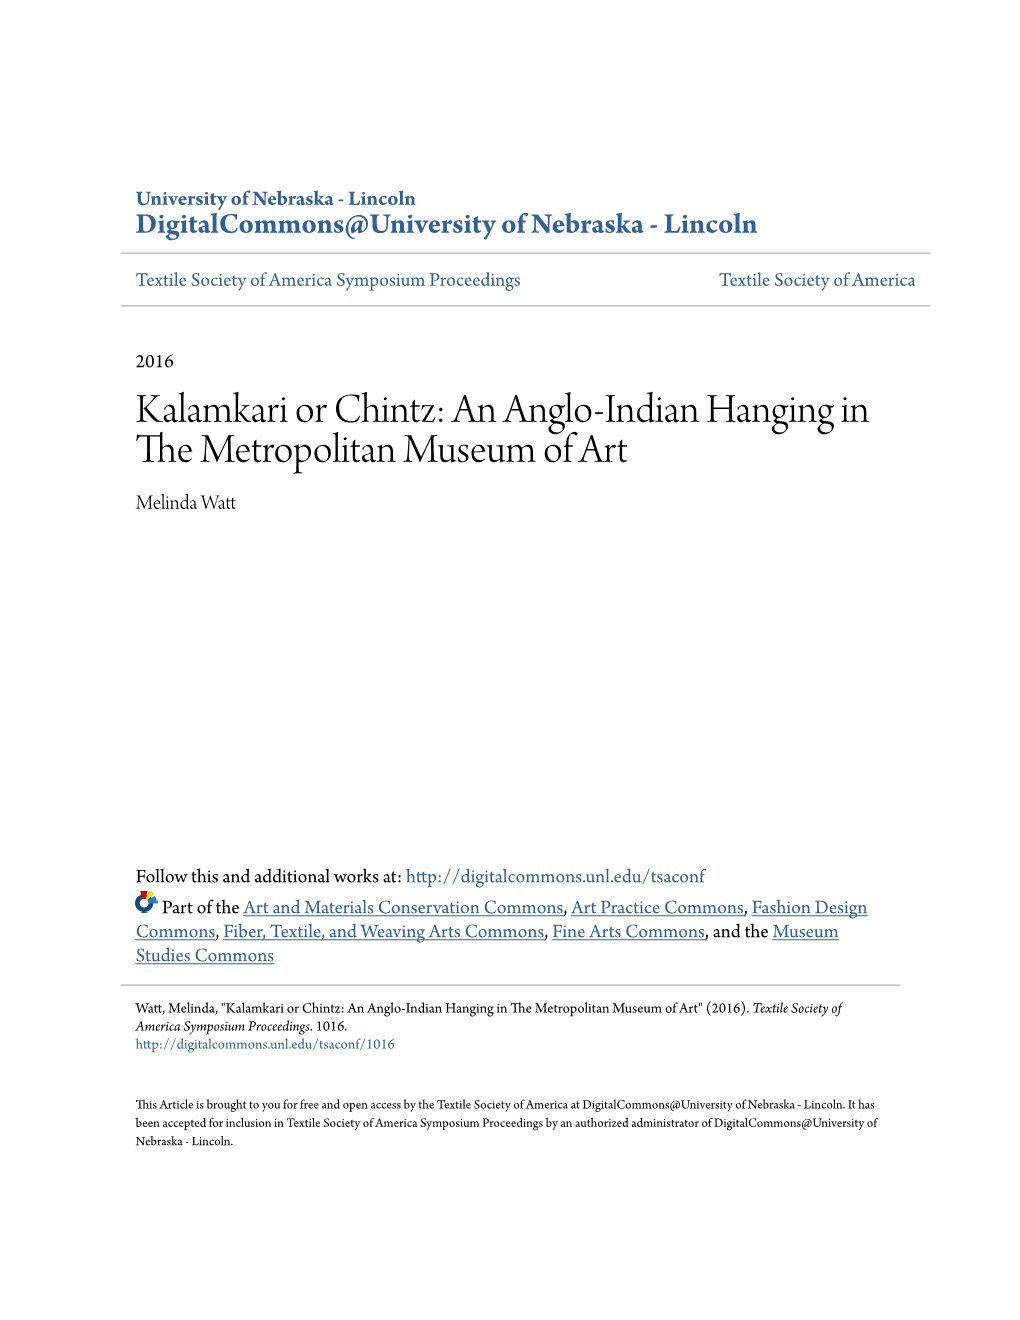 Kalamkari Or Chintz: an Anglo-Indian Hanging in the Metropolitan Museum of Art Melinda Watt